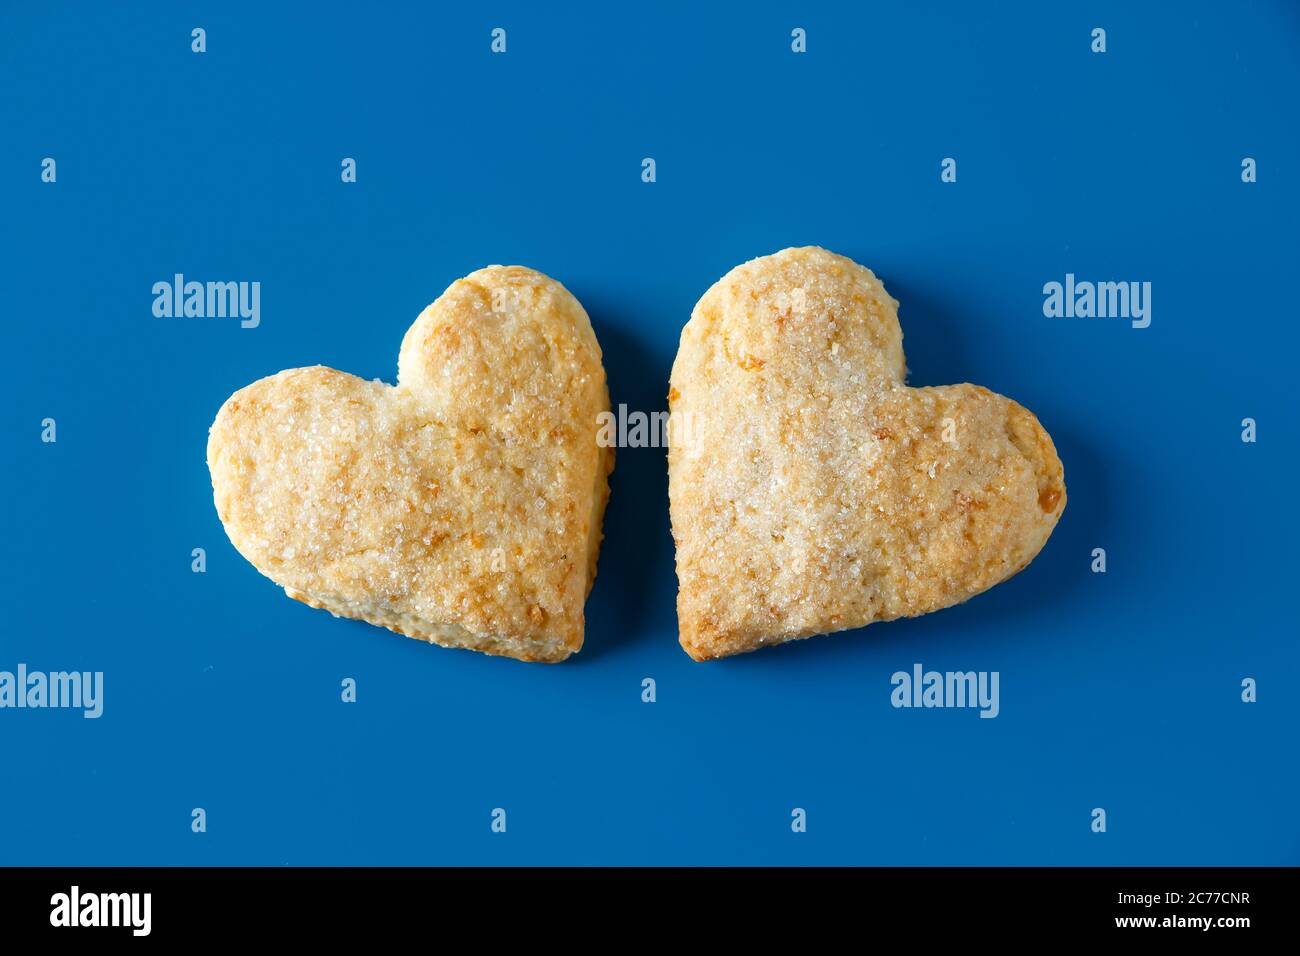 Galletas de azúcar en forma de corazón sobre un fondo azul. Dos galletas de azúcar en forma de corazón sobre un fondo azul, color de tendencia del año Foto de stock